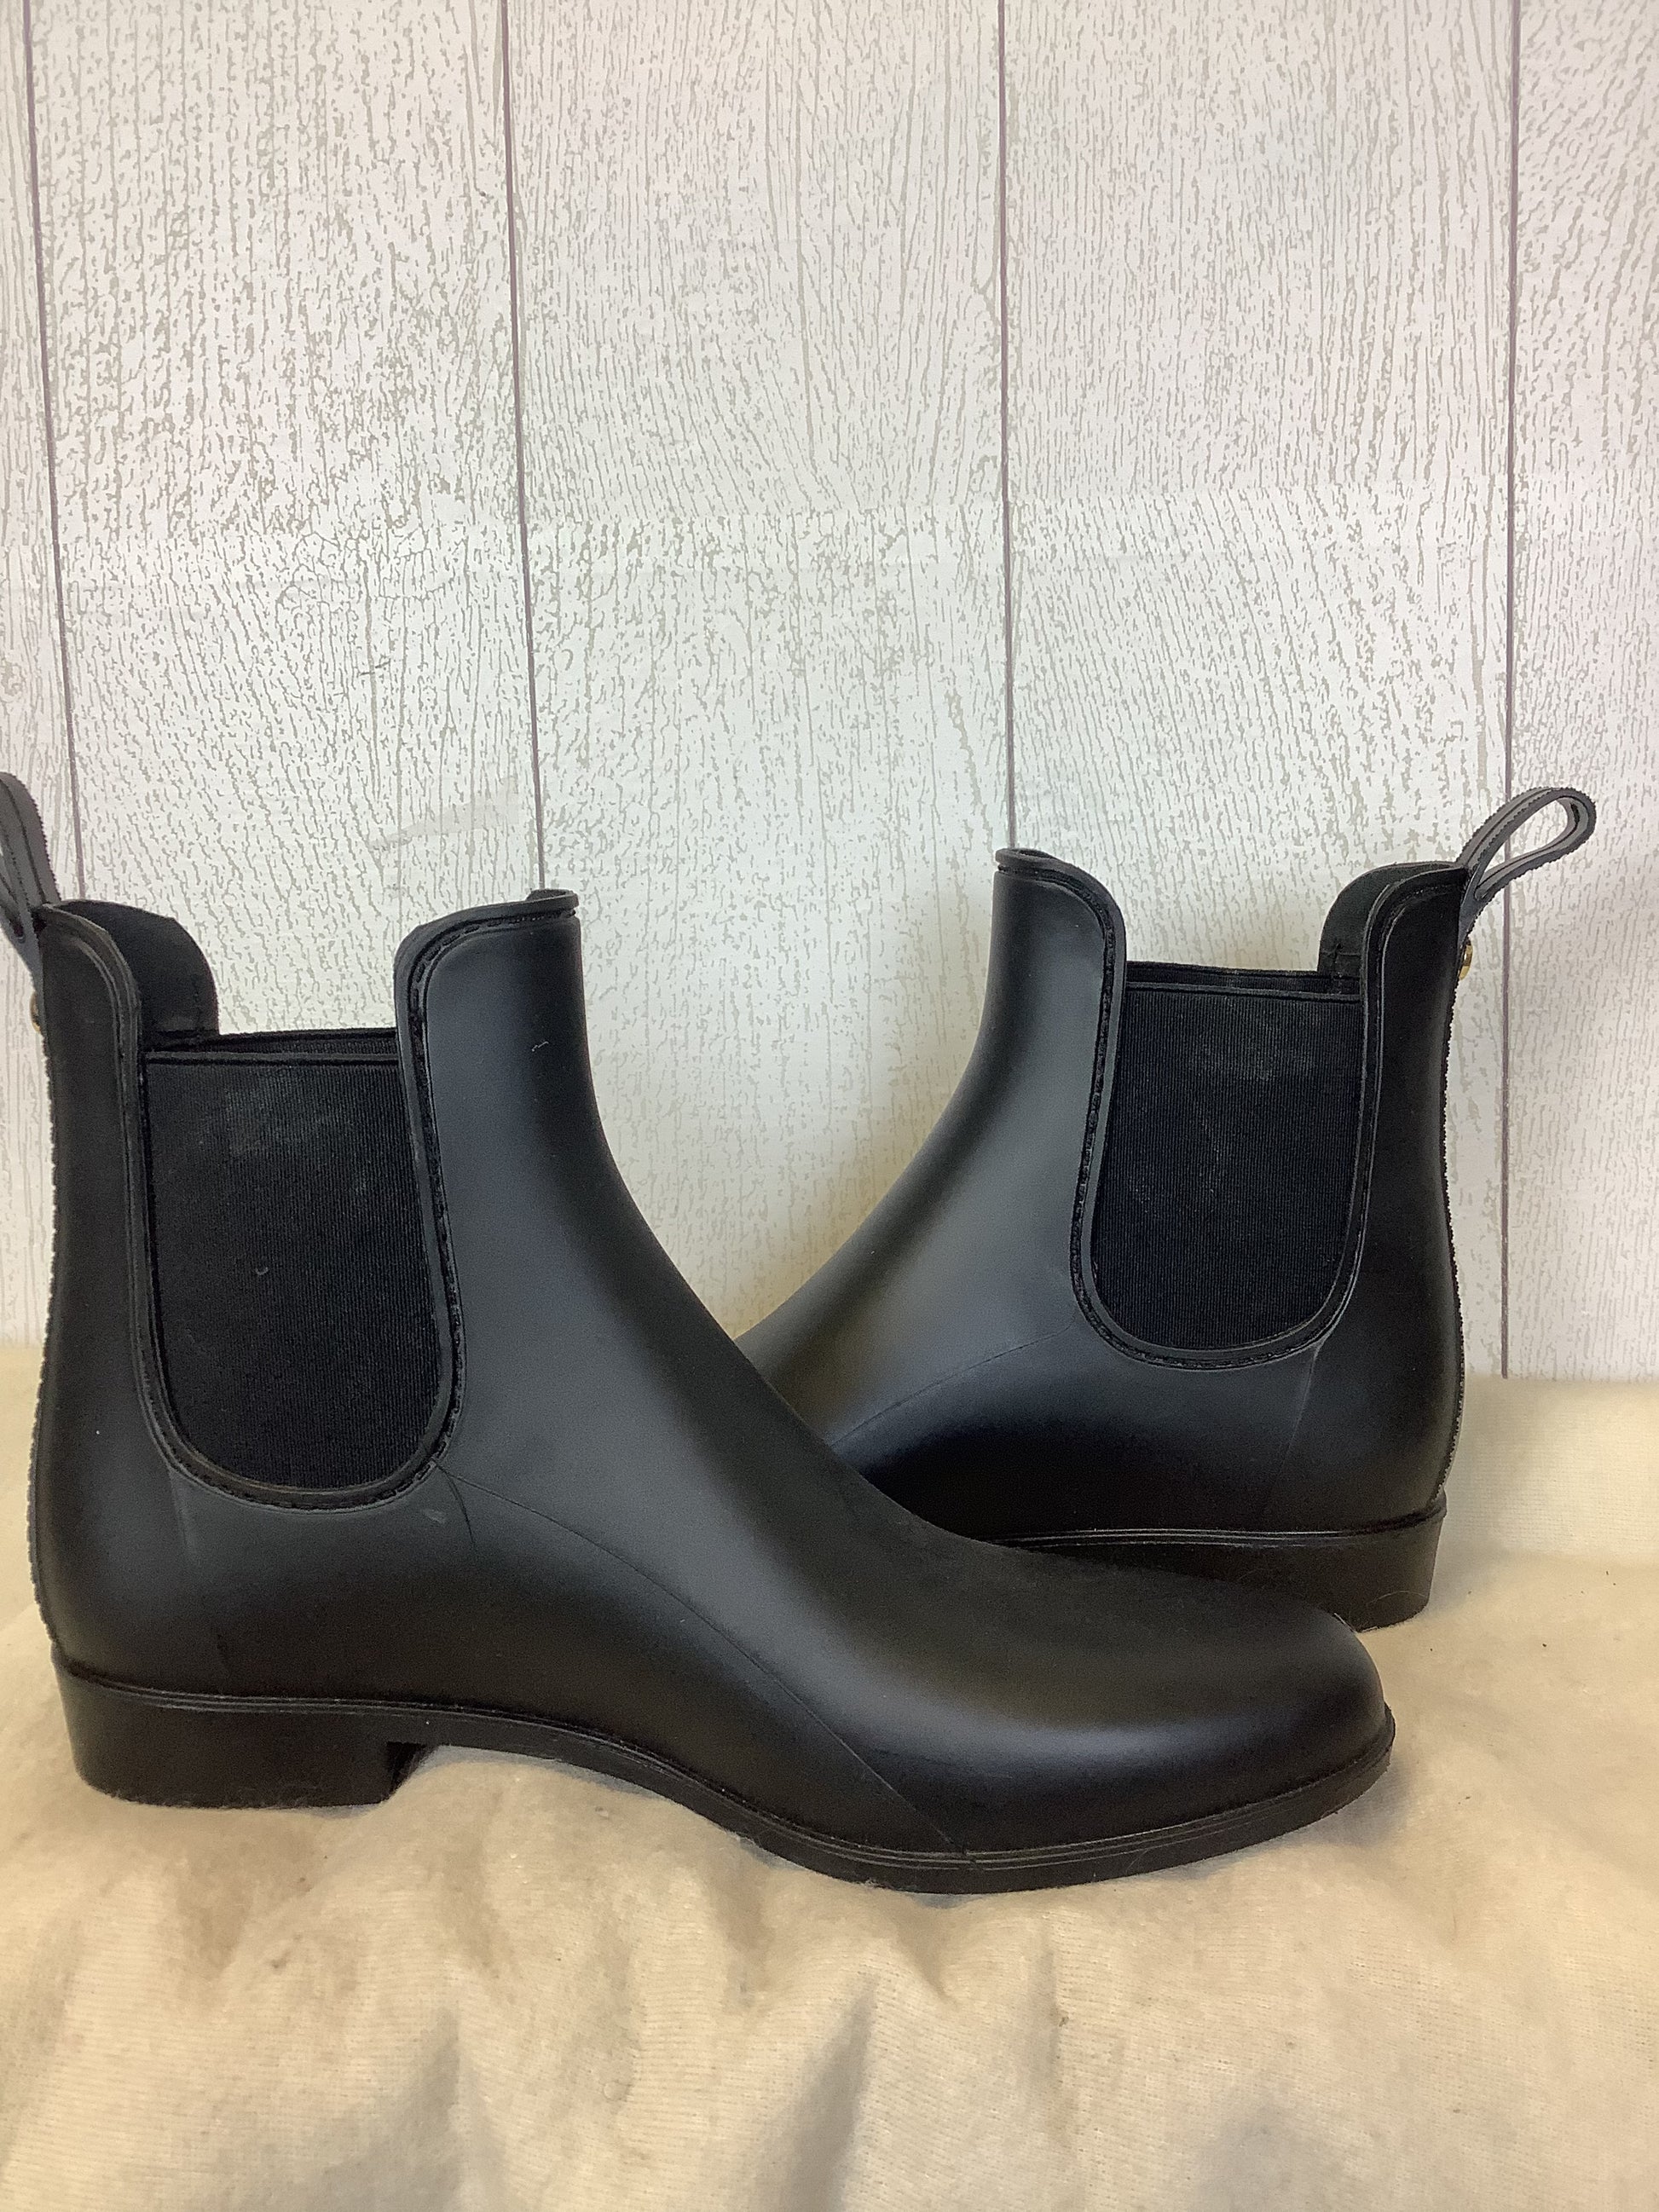 Boots Ankle Sam Edelman Size: 9 – Clothes Spartanburg SC #210